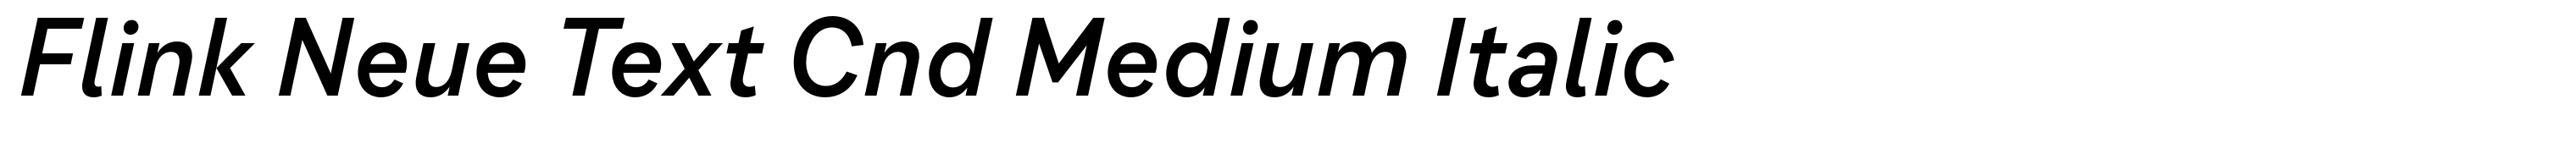 Flink Neue Text Cnd Medium Italic